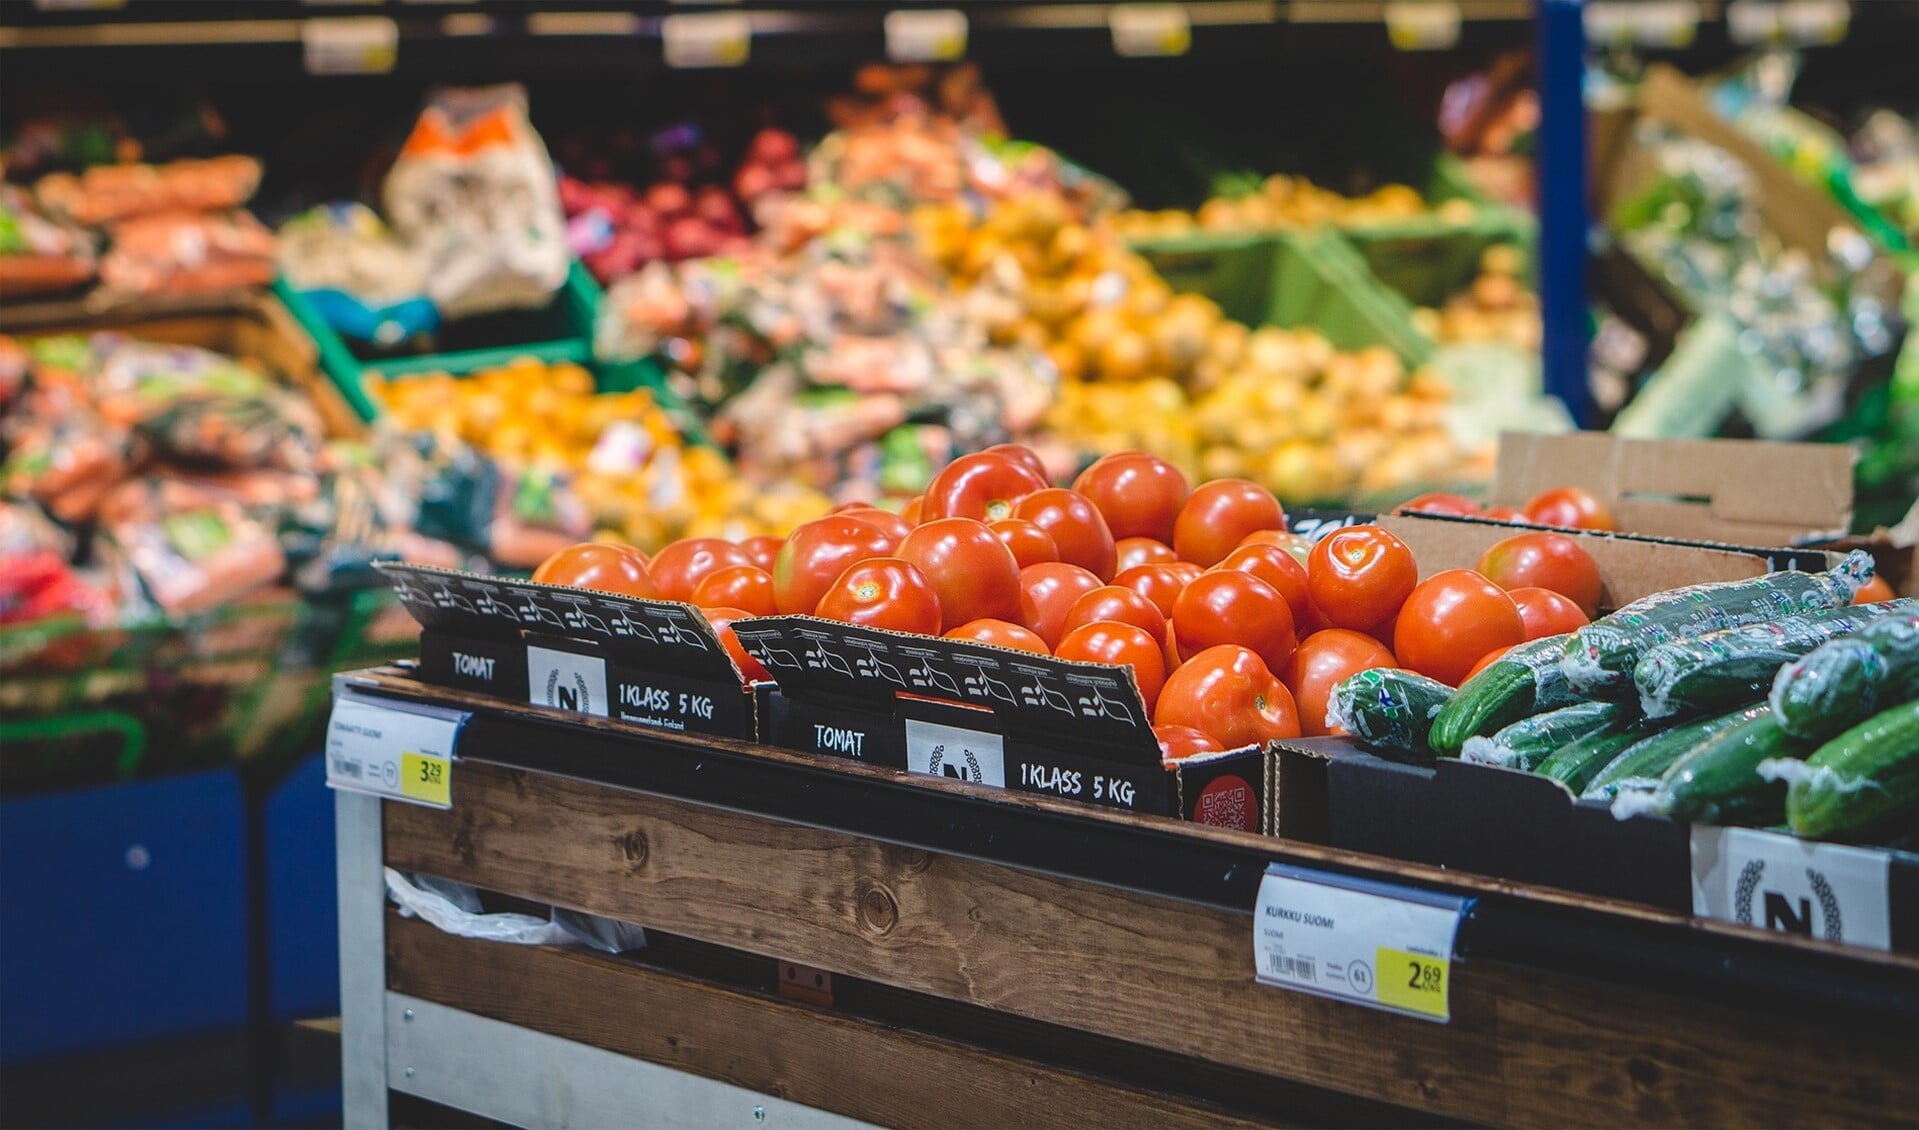 Met deze winkelacties probeert de Voedselbank een gevarieerd levensmiddelenpakket samen te stellen. 